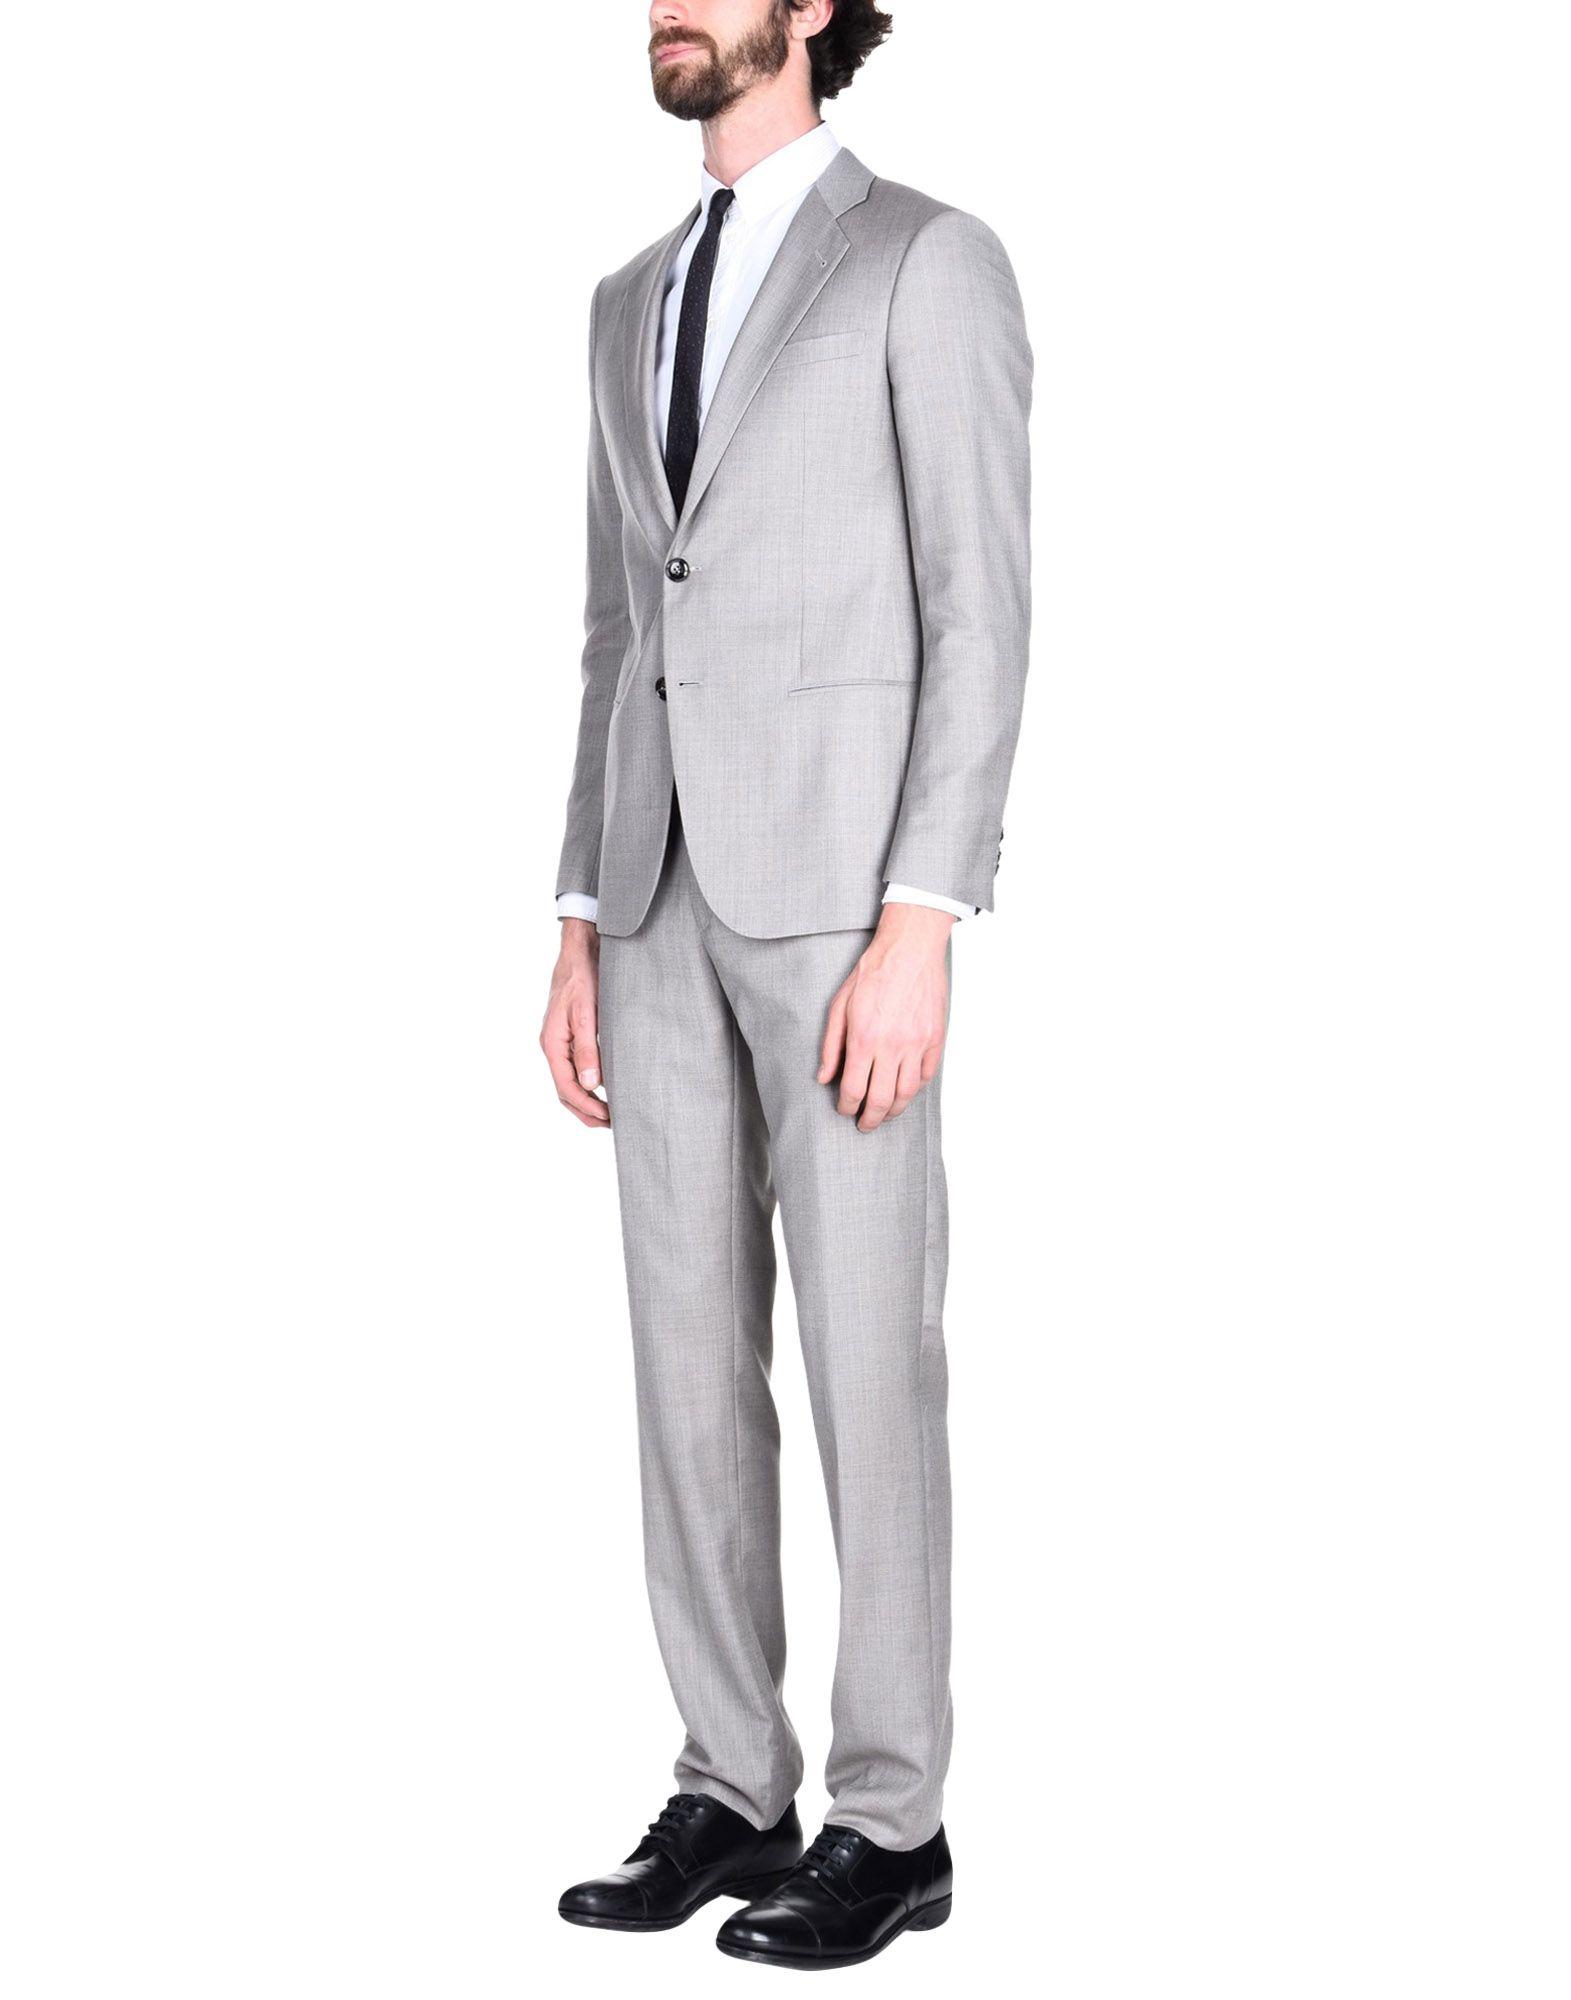 giorgio armani suits for sale